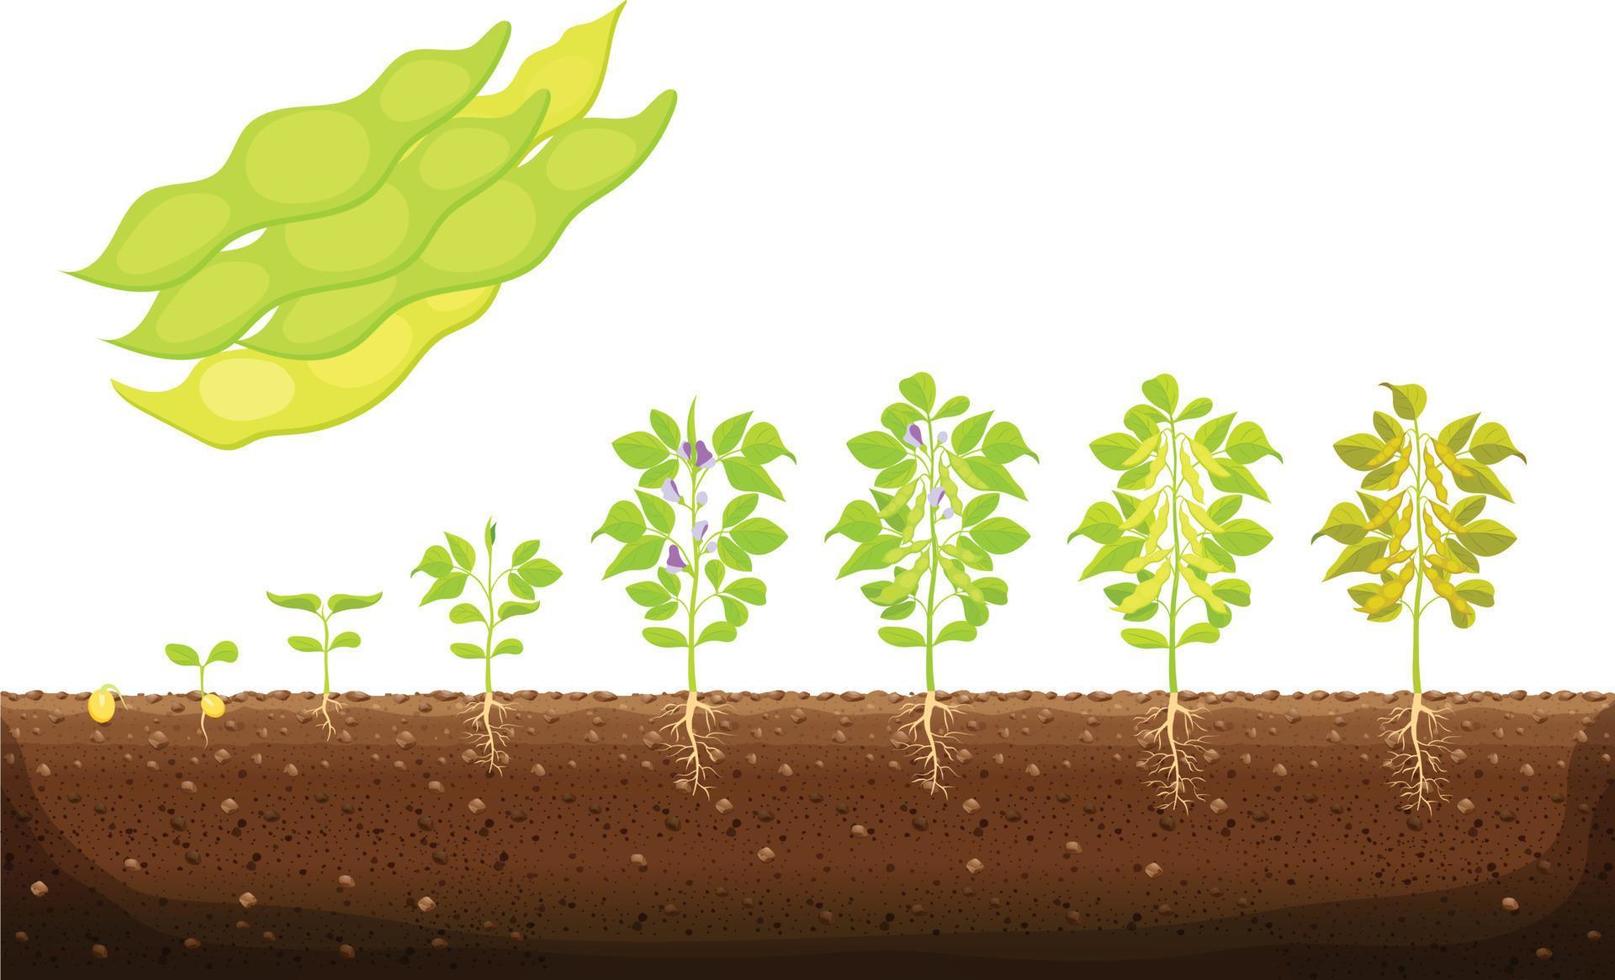 infográfico de estágios de crescimento da planta de soja. estágios de crescimento da soja, cultivo de hortaliças de soja. o processo de crescimento de grãos de soja a partir de sementes e brotos para soja madura, o ciclo de vida do vetor da planta